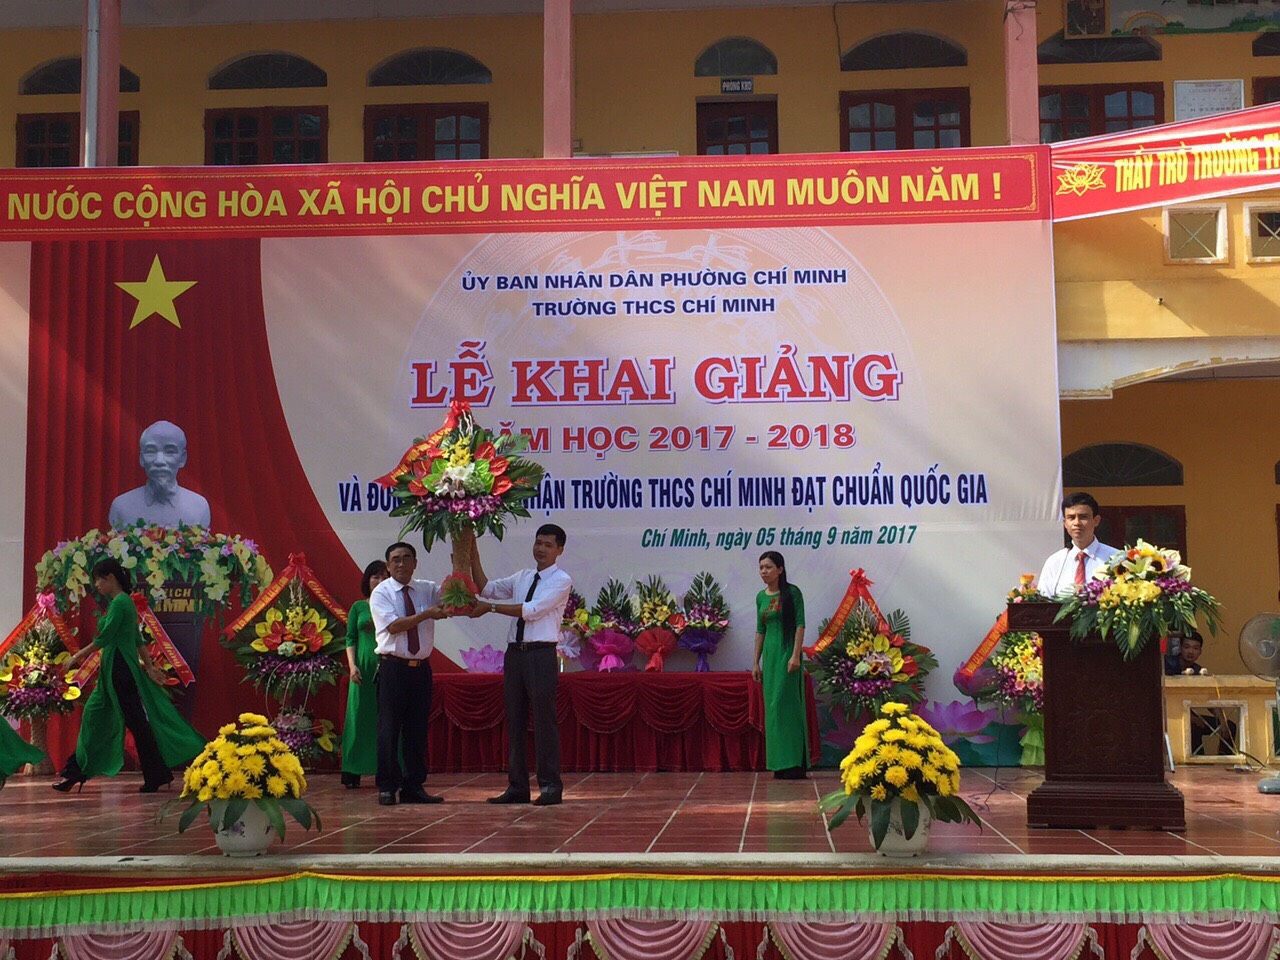 Lãnh đạo Phường Chí Minh tặng hoa chúc mừng!